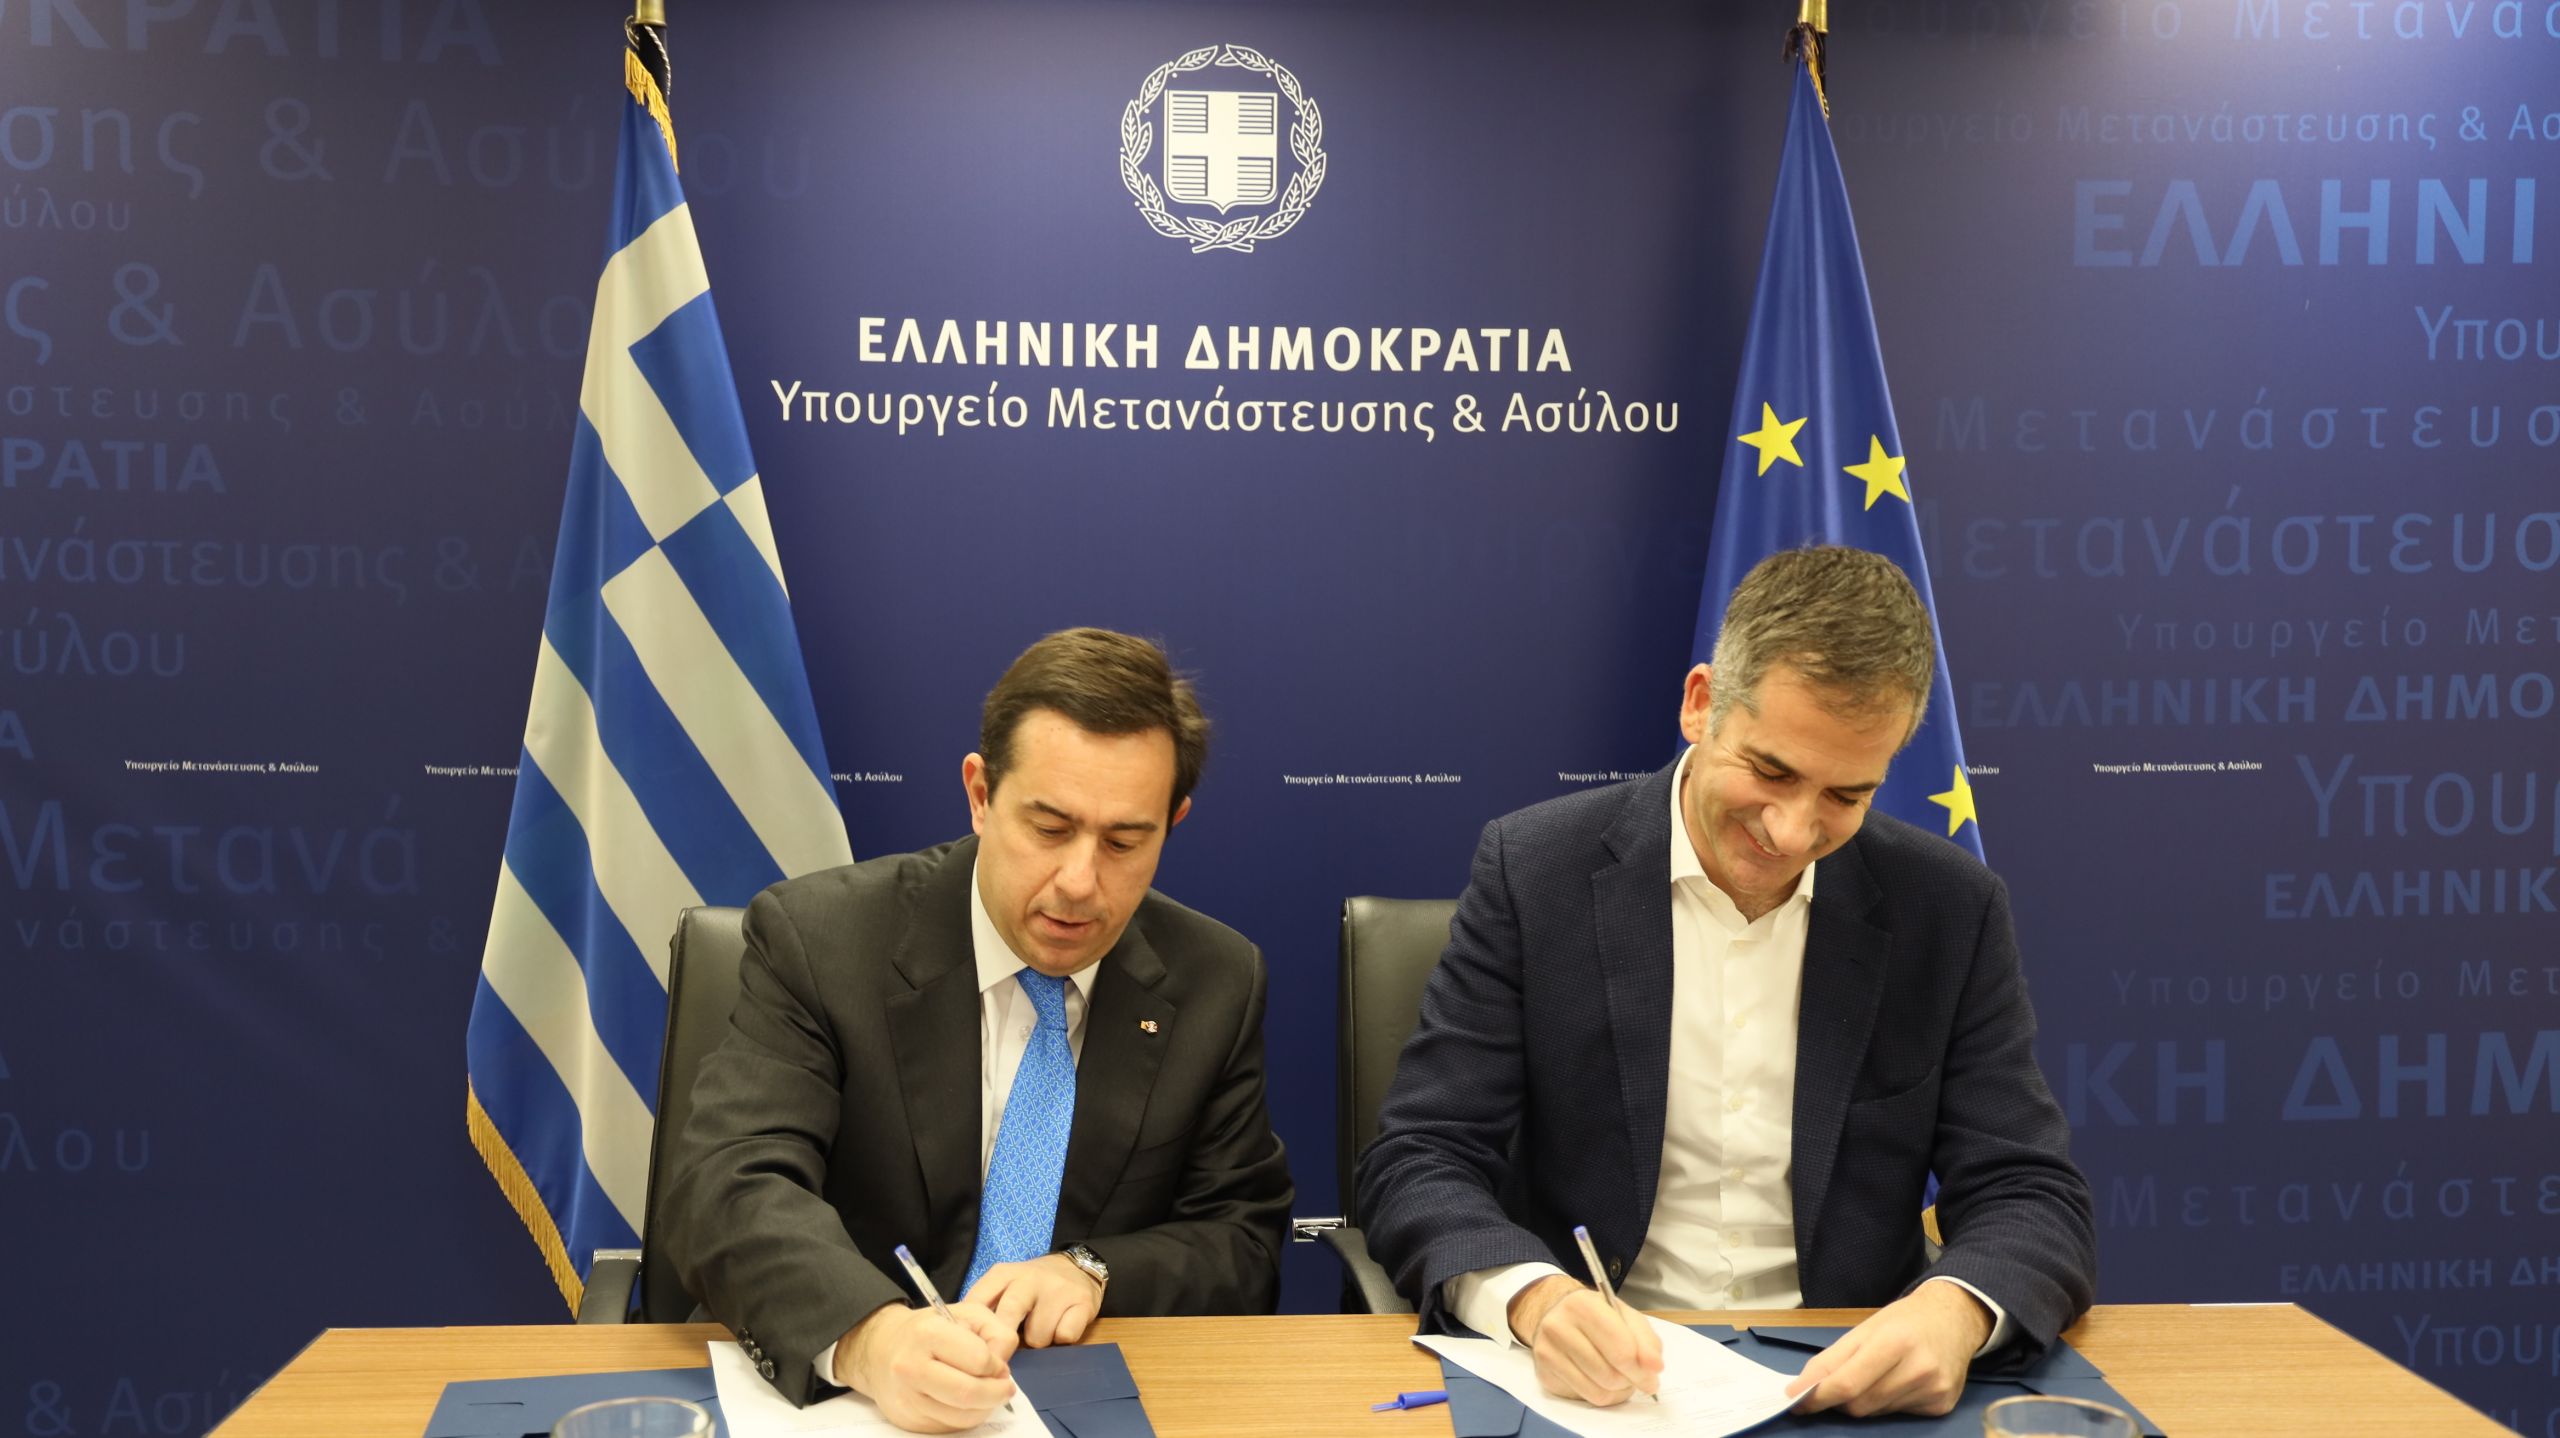 Μνημόνιο Συνεργασίας Μηταράκη – Μπακογιάννη για τη στήριξη του δήμου Αθηναίων μετά το κλείσιμο της δομής του Ελαιώνα